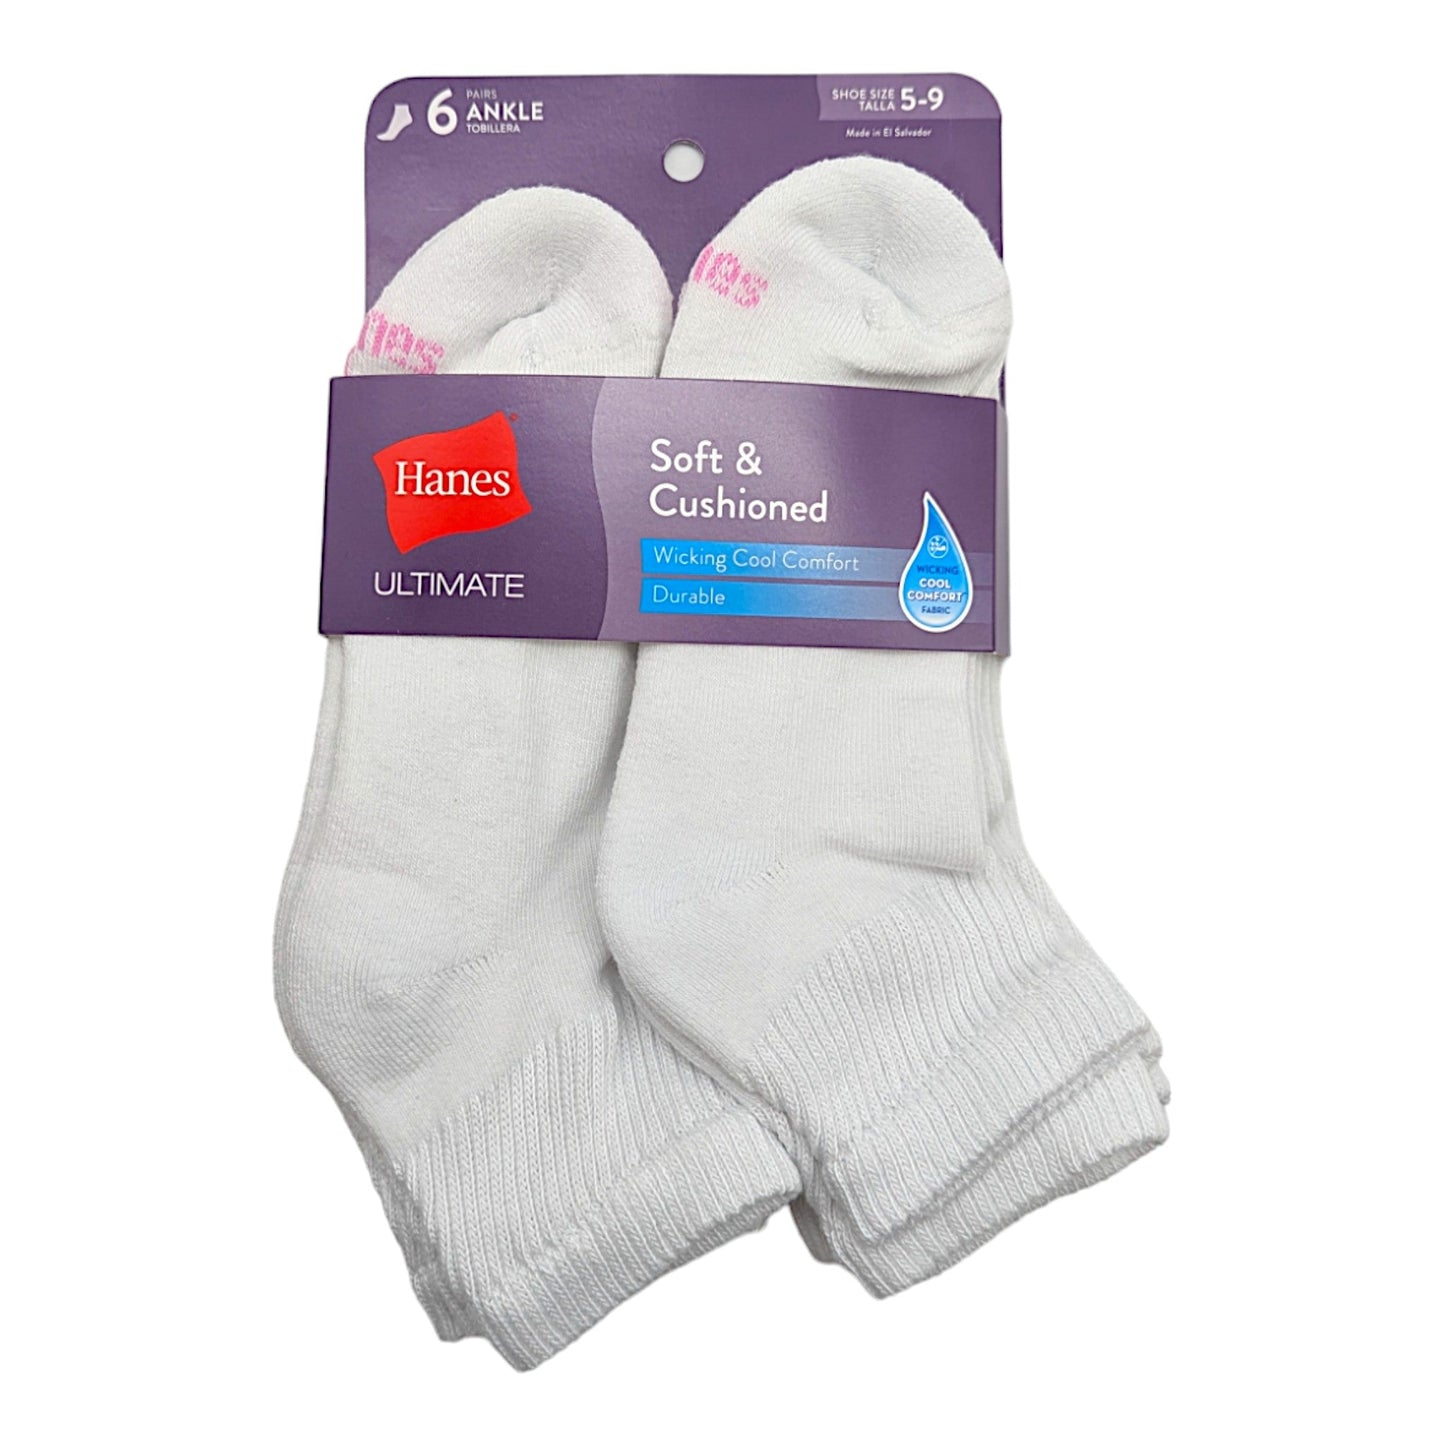 Hanes Women's Ankle Sock